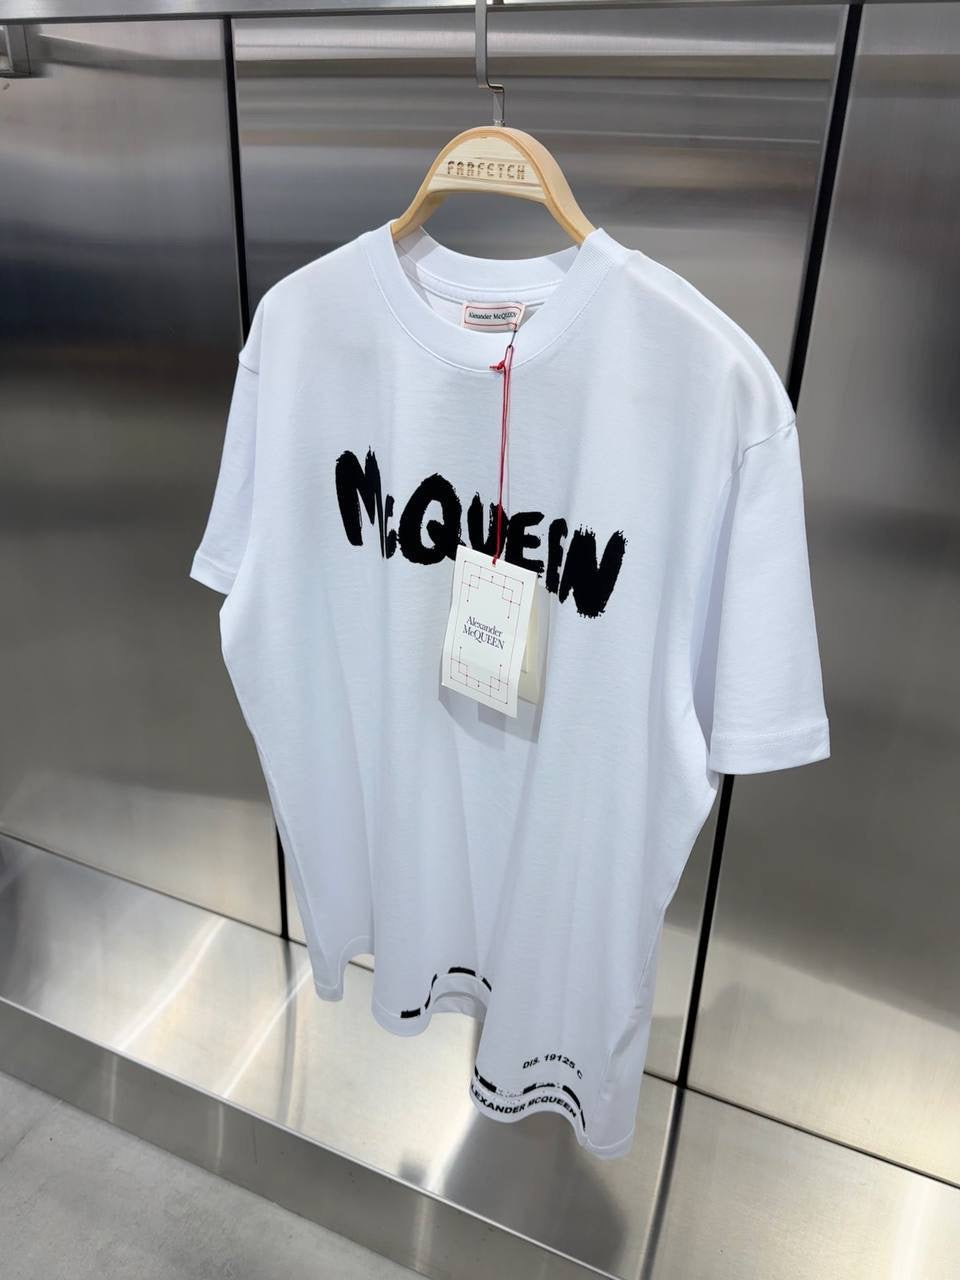 McQueen T-shirt